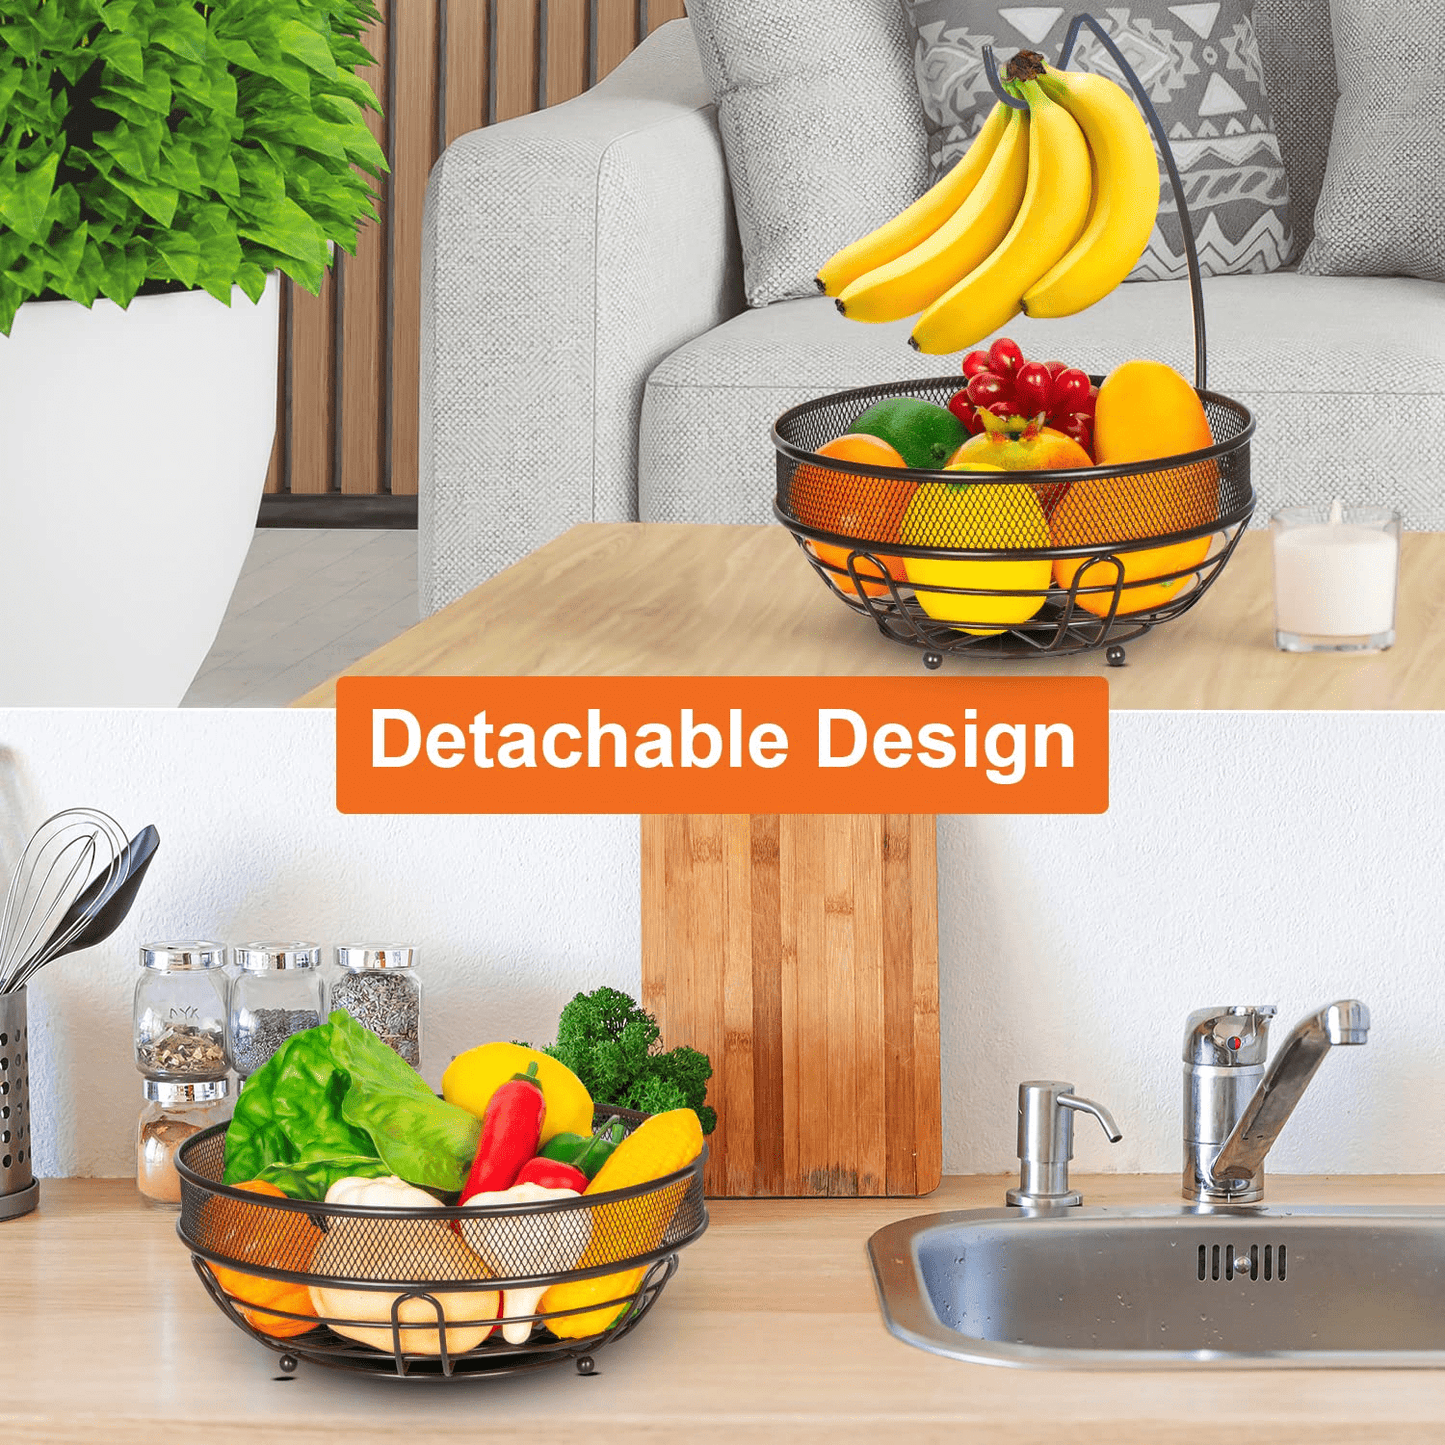 Bextsrack 2-Tier Fruit Basket Bowl with Banana Hook, Removable Vegetable Storage Kitchen Countertop, Bronze